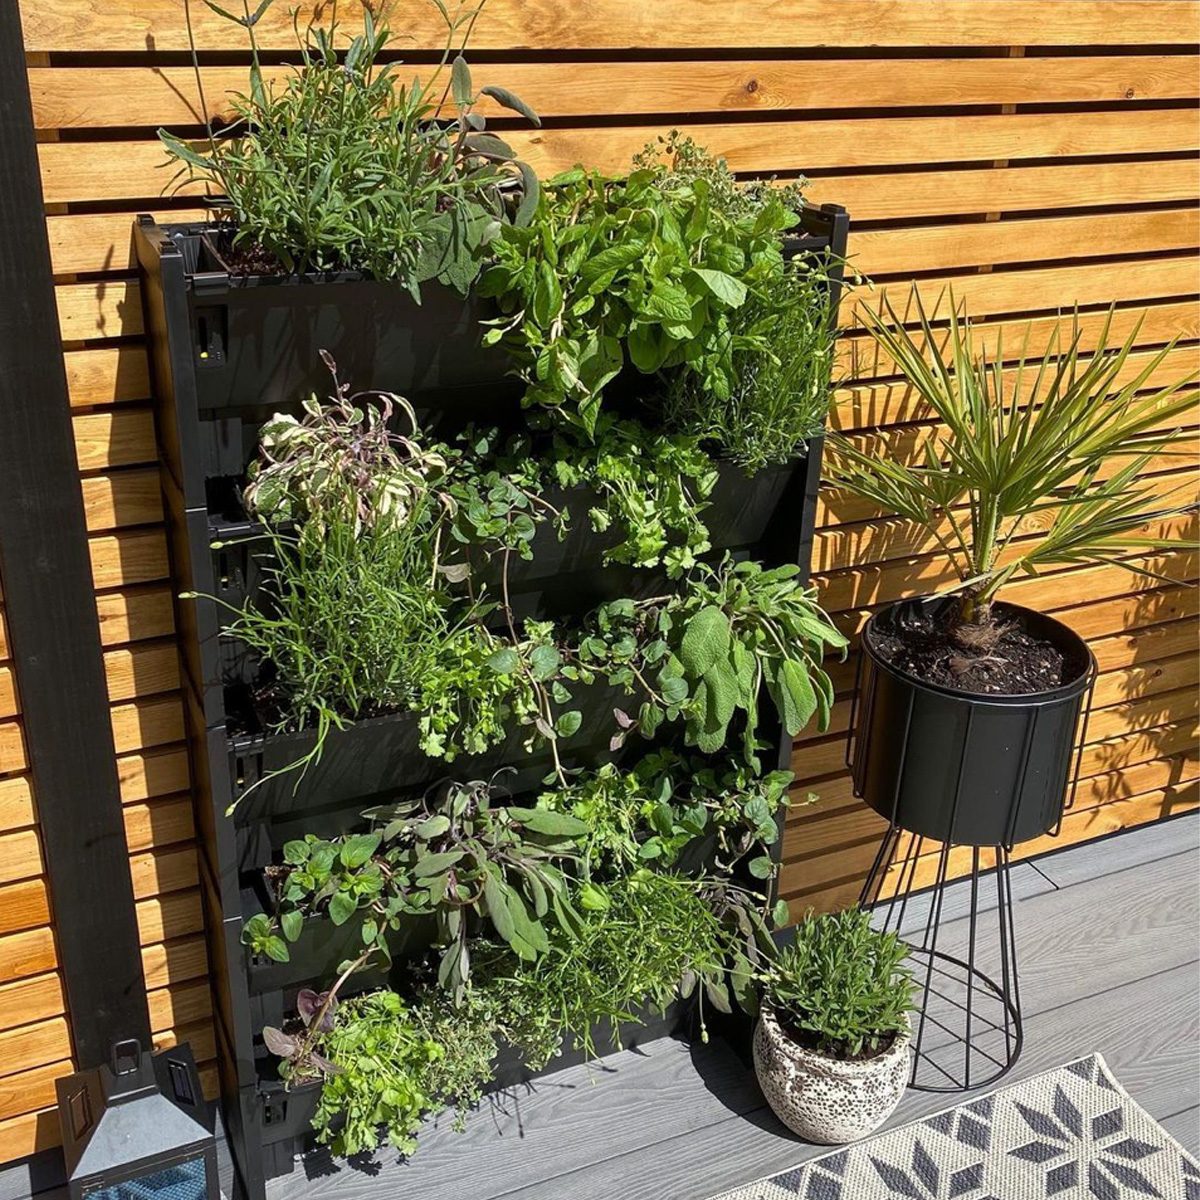 Home Gardening  Ideas for Vegetable, Herb Gardens & More - HomeAdvisor